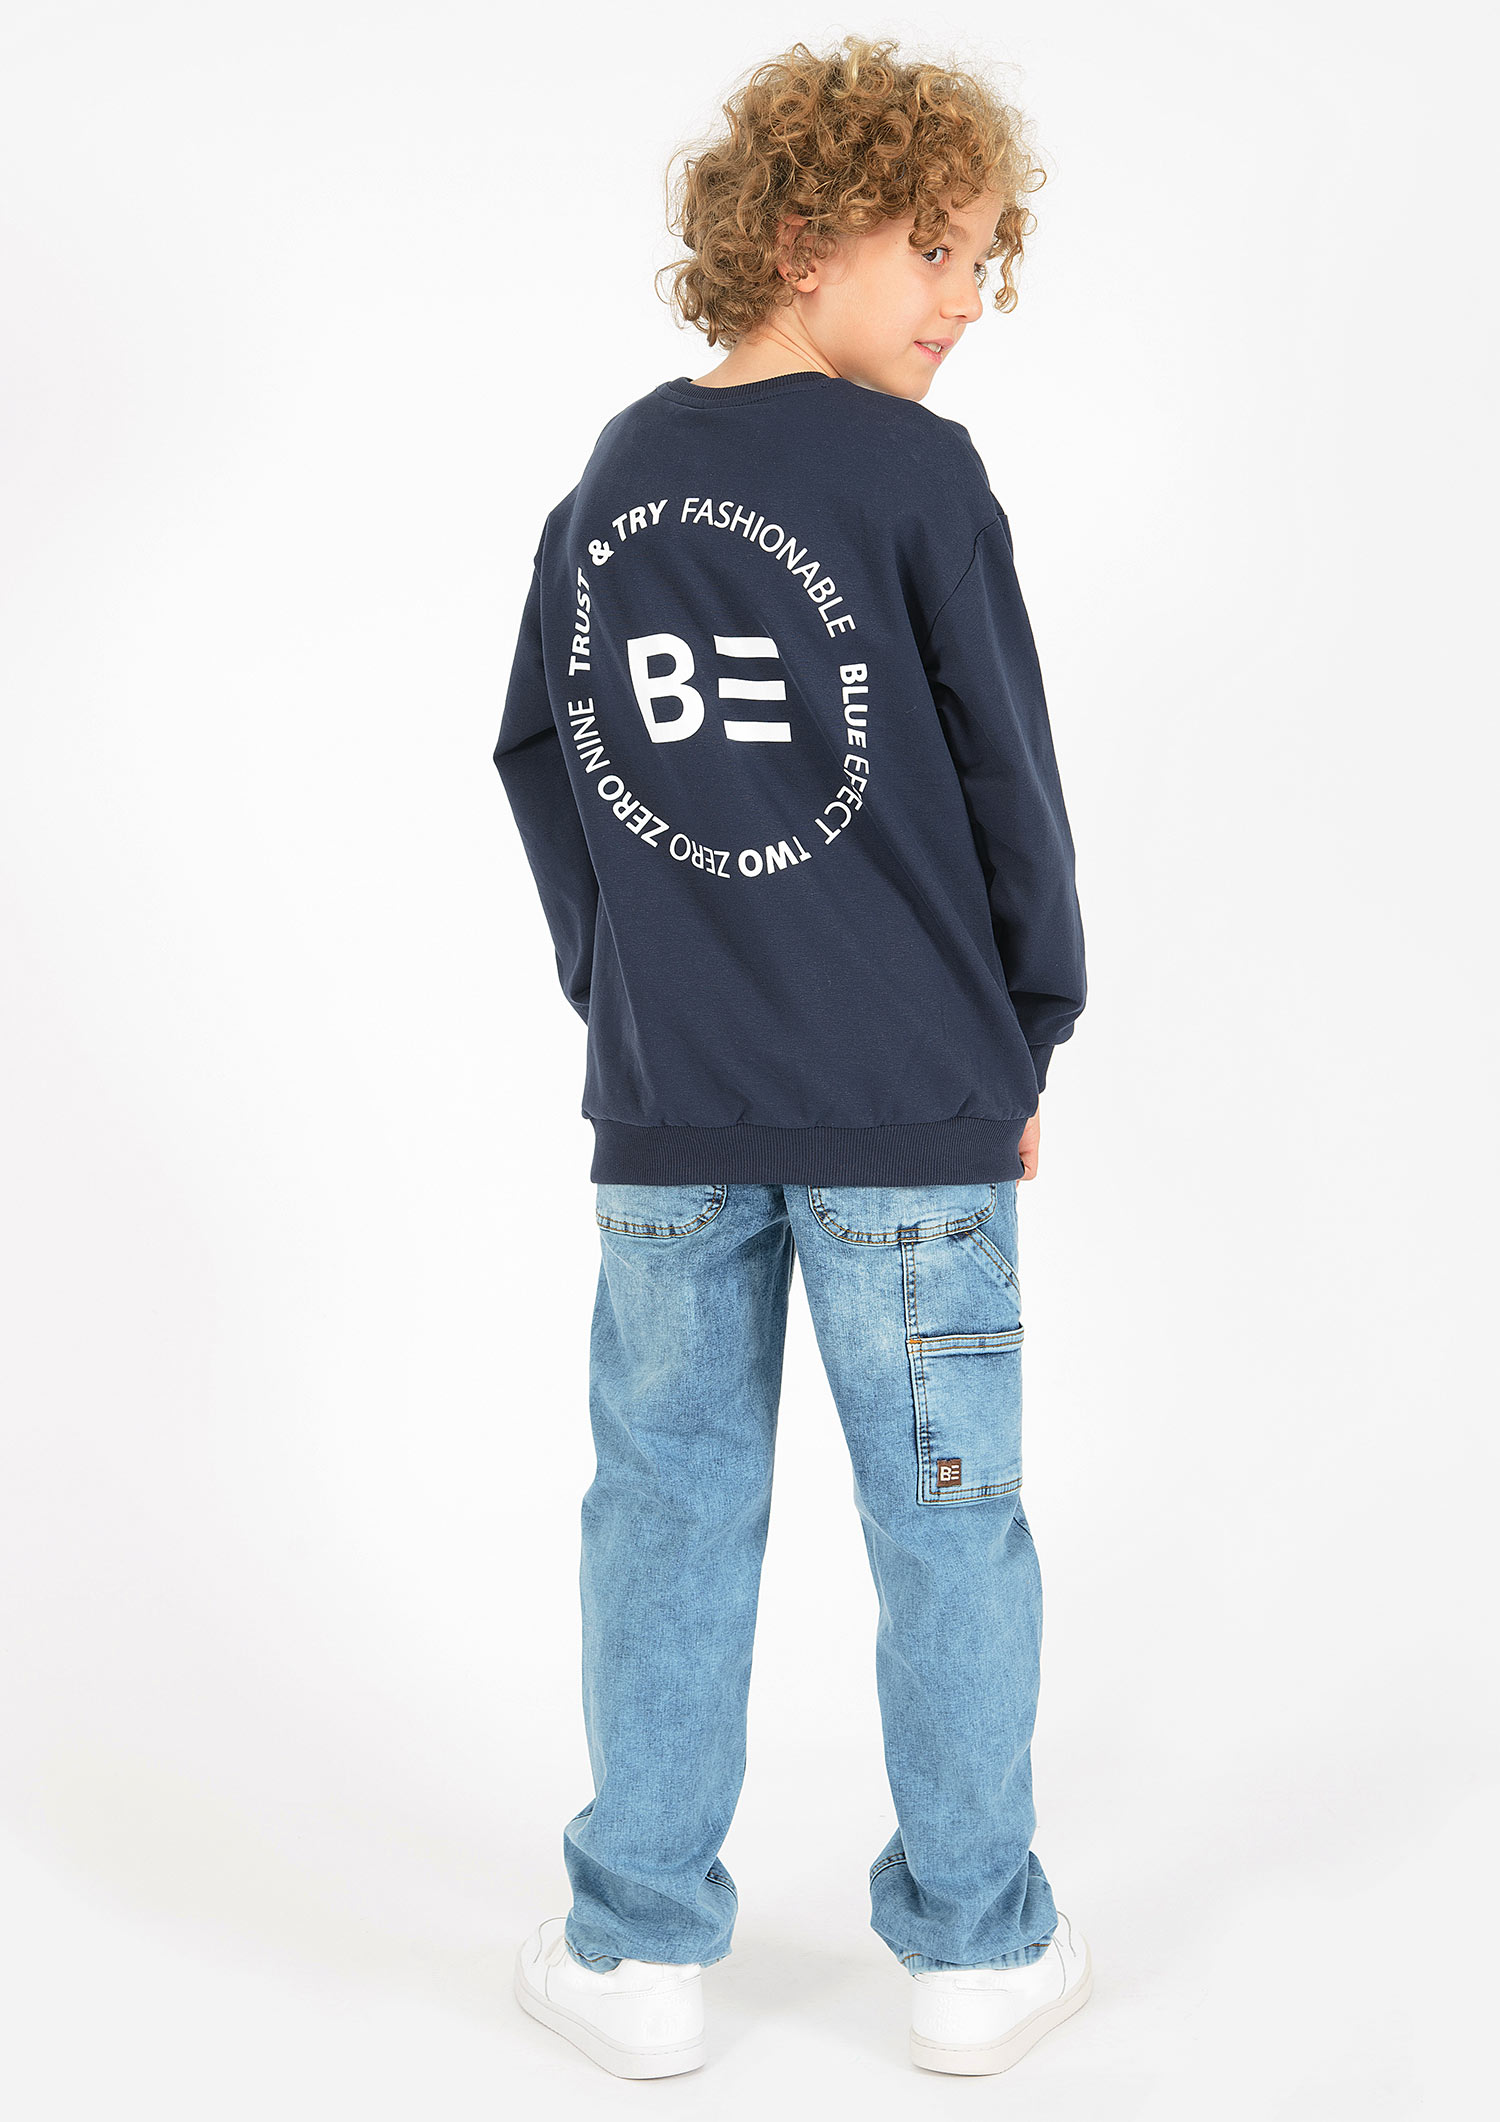 6323-Boys Oversized Sweatshirt -BE